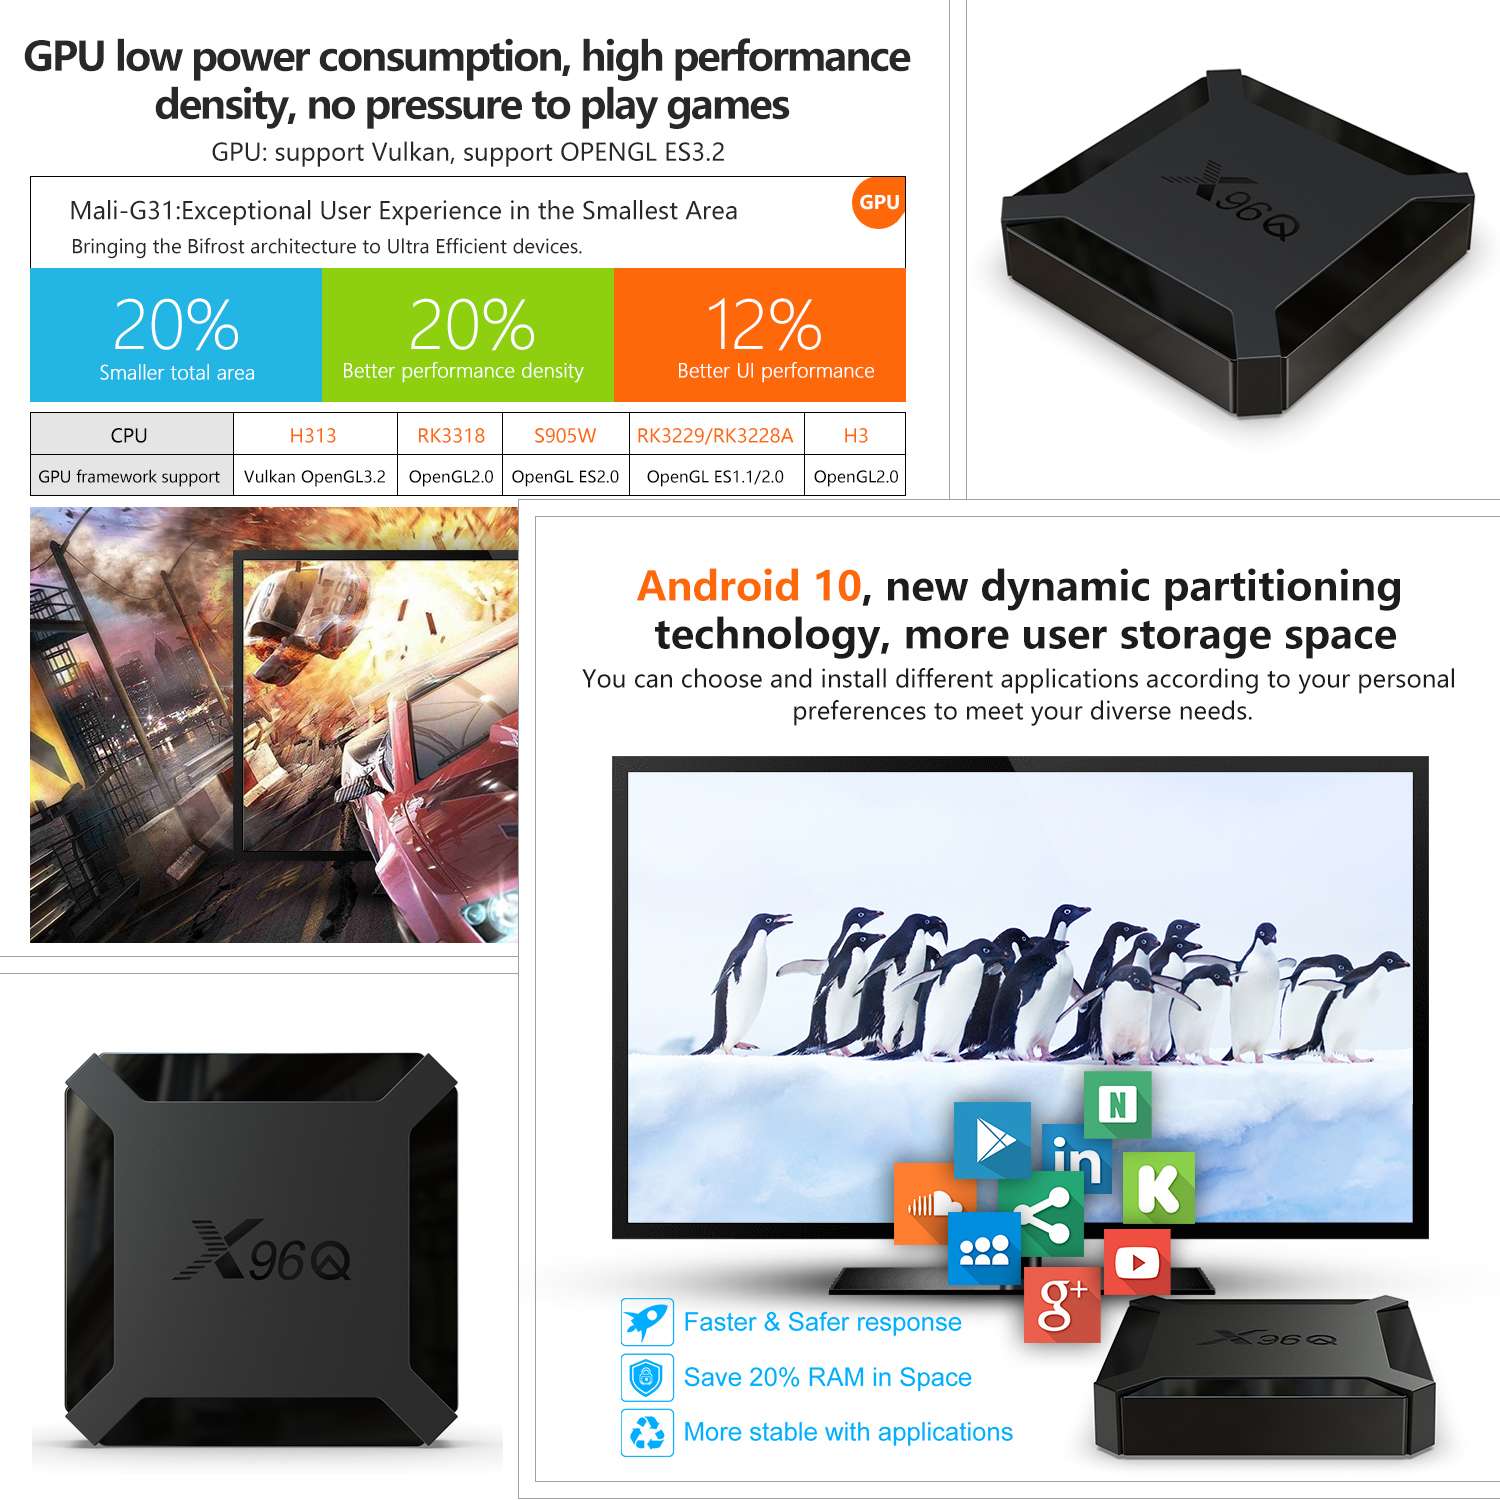 NOUVEAU 2020 Android 10 X96Q Smart TV Box Allwinner H313 ...